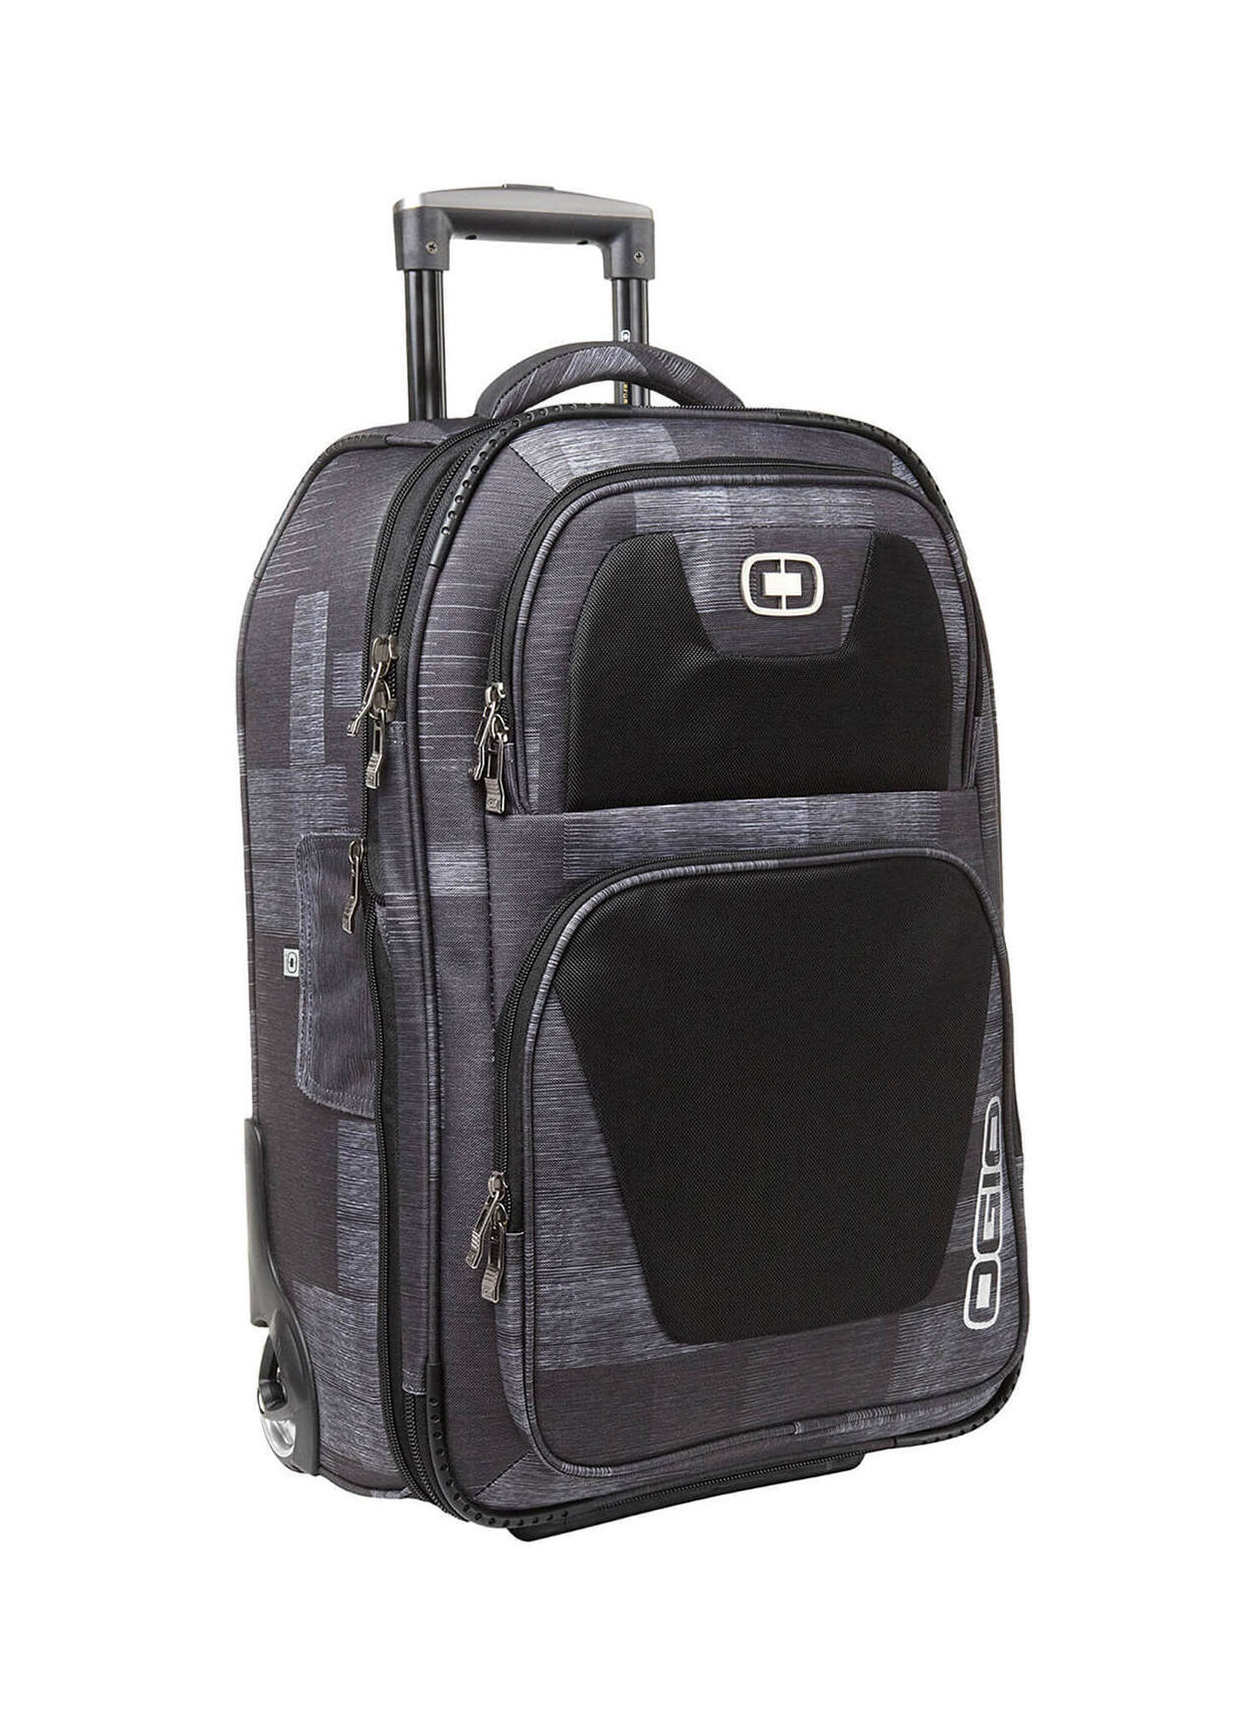 OGIO Charcoal Kickstart 22 Travel Bag